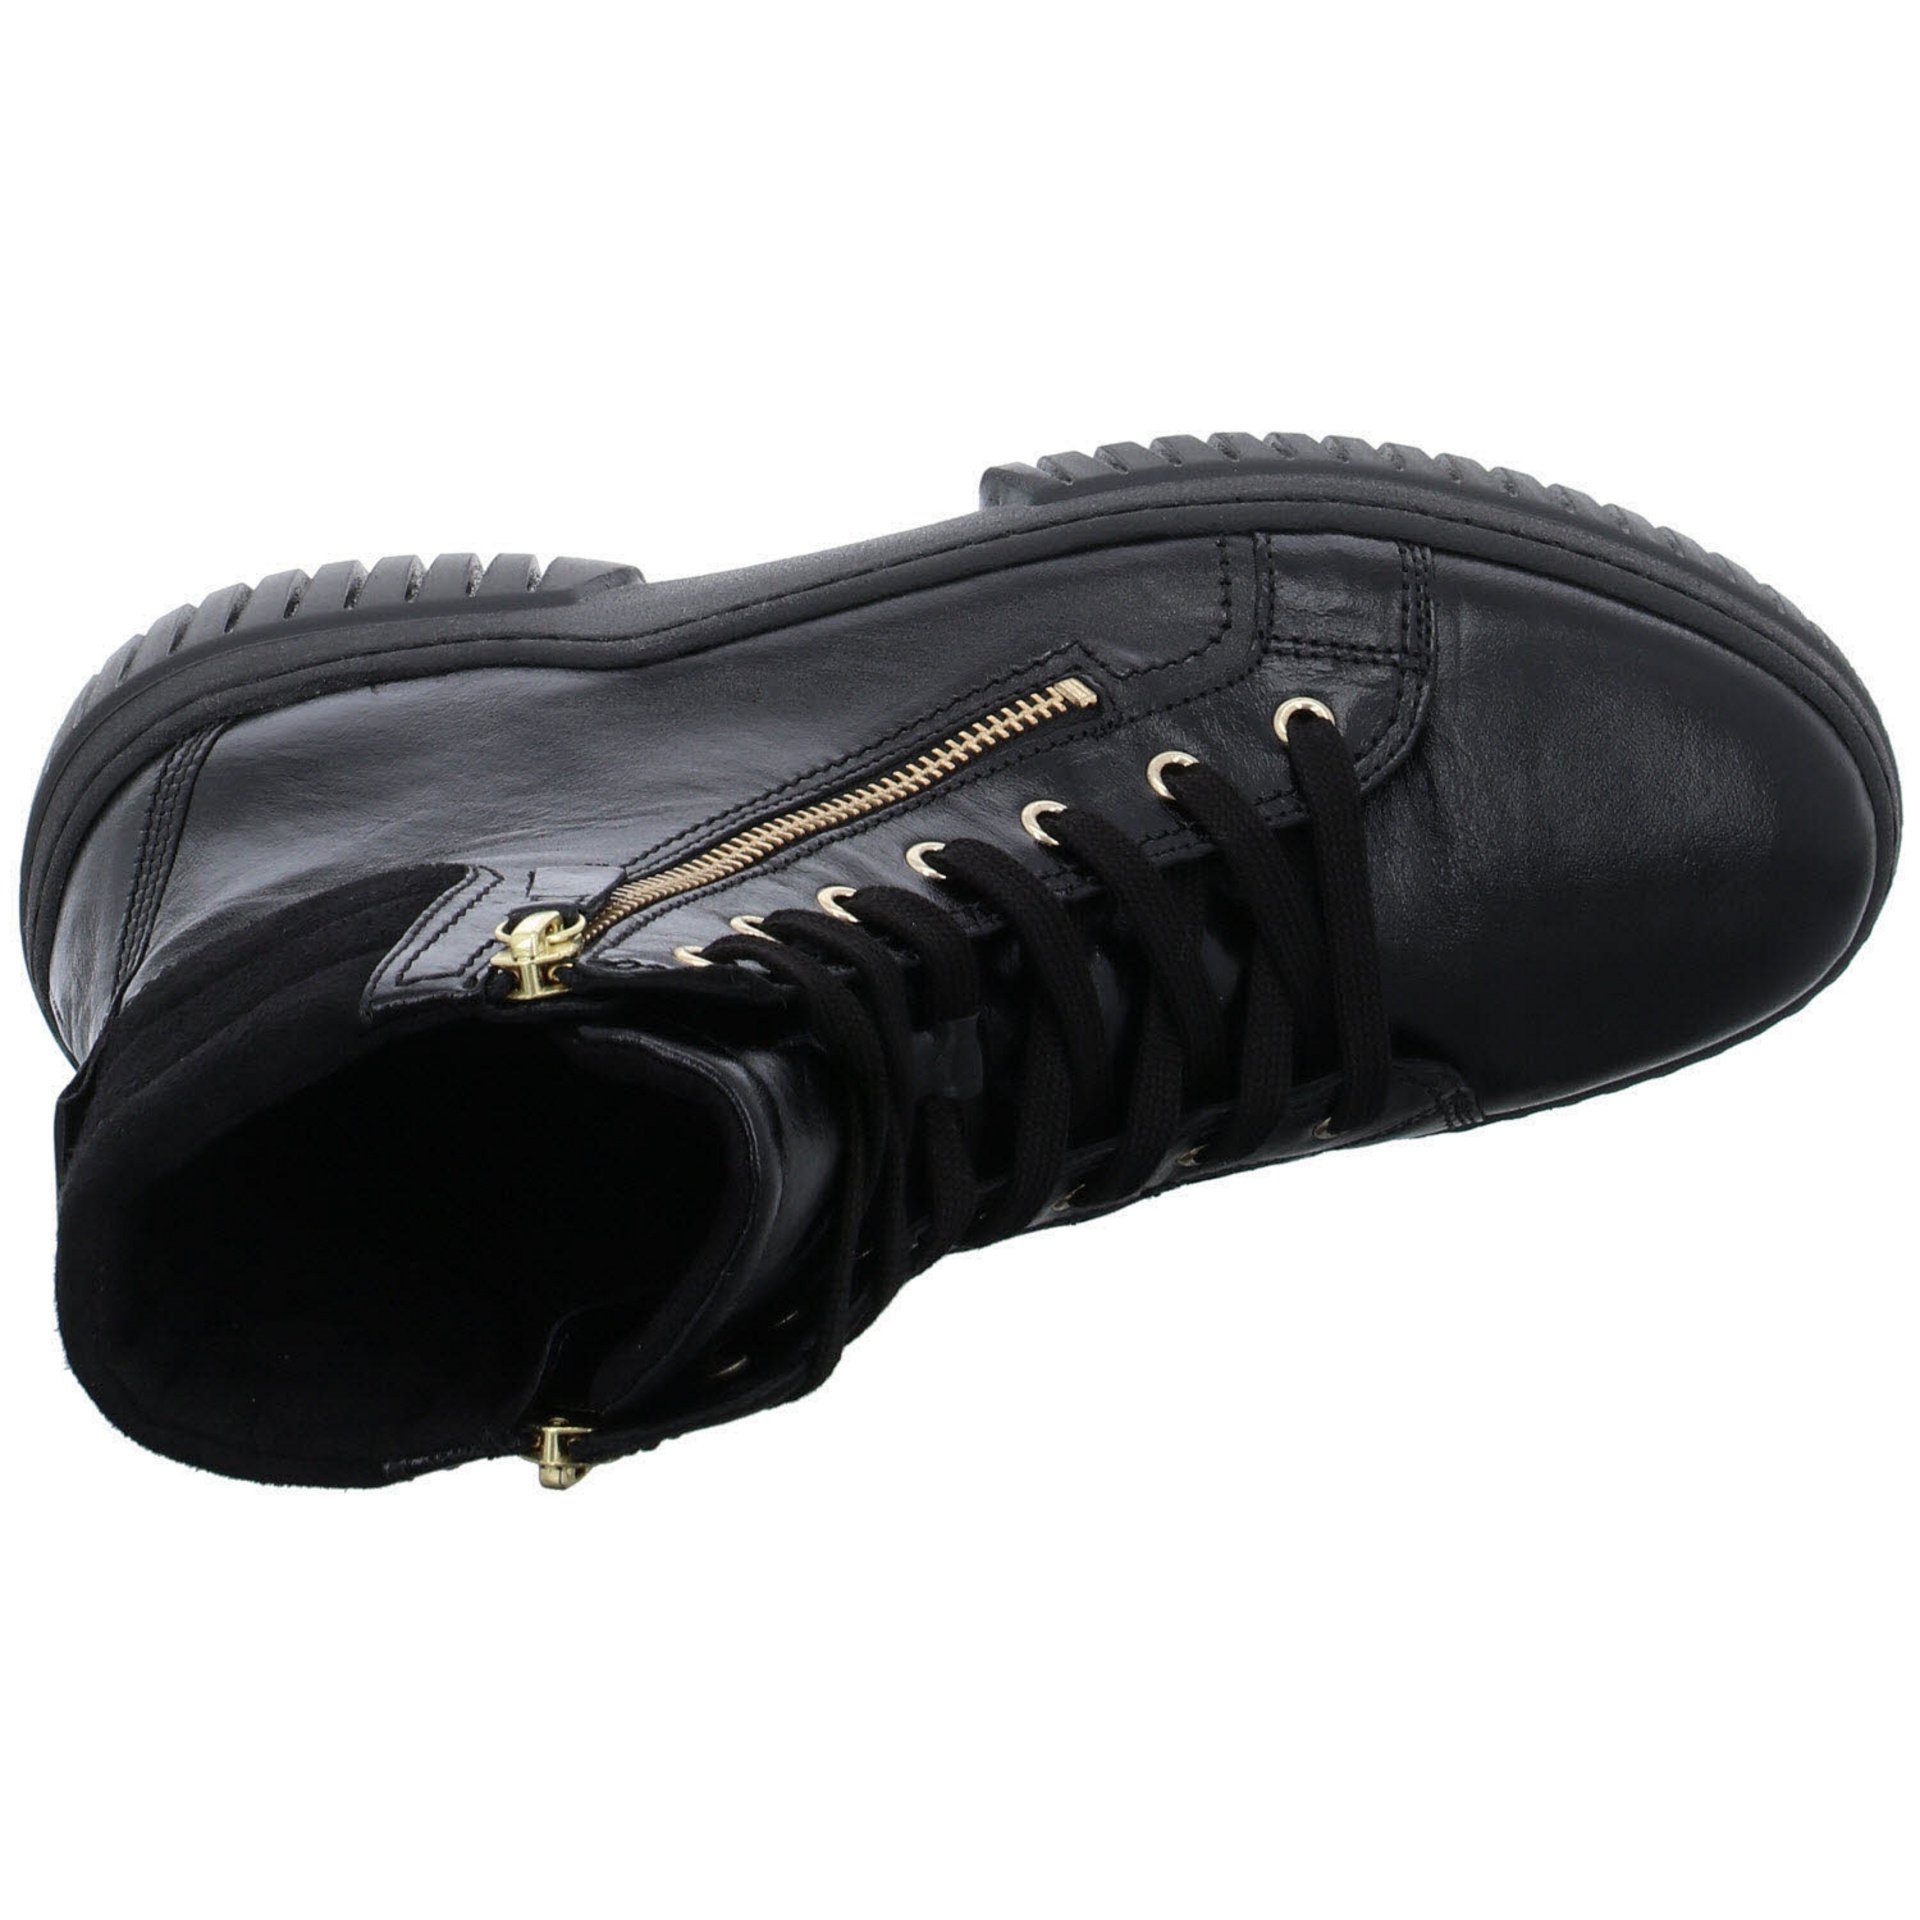 Schnürstiefel (gold) Glattleder Boots Elegant Schuhe Freizeit Damen Gabor Stiefeletten schwarz